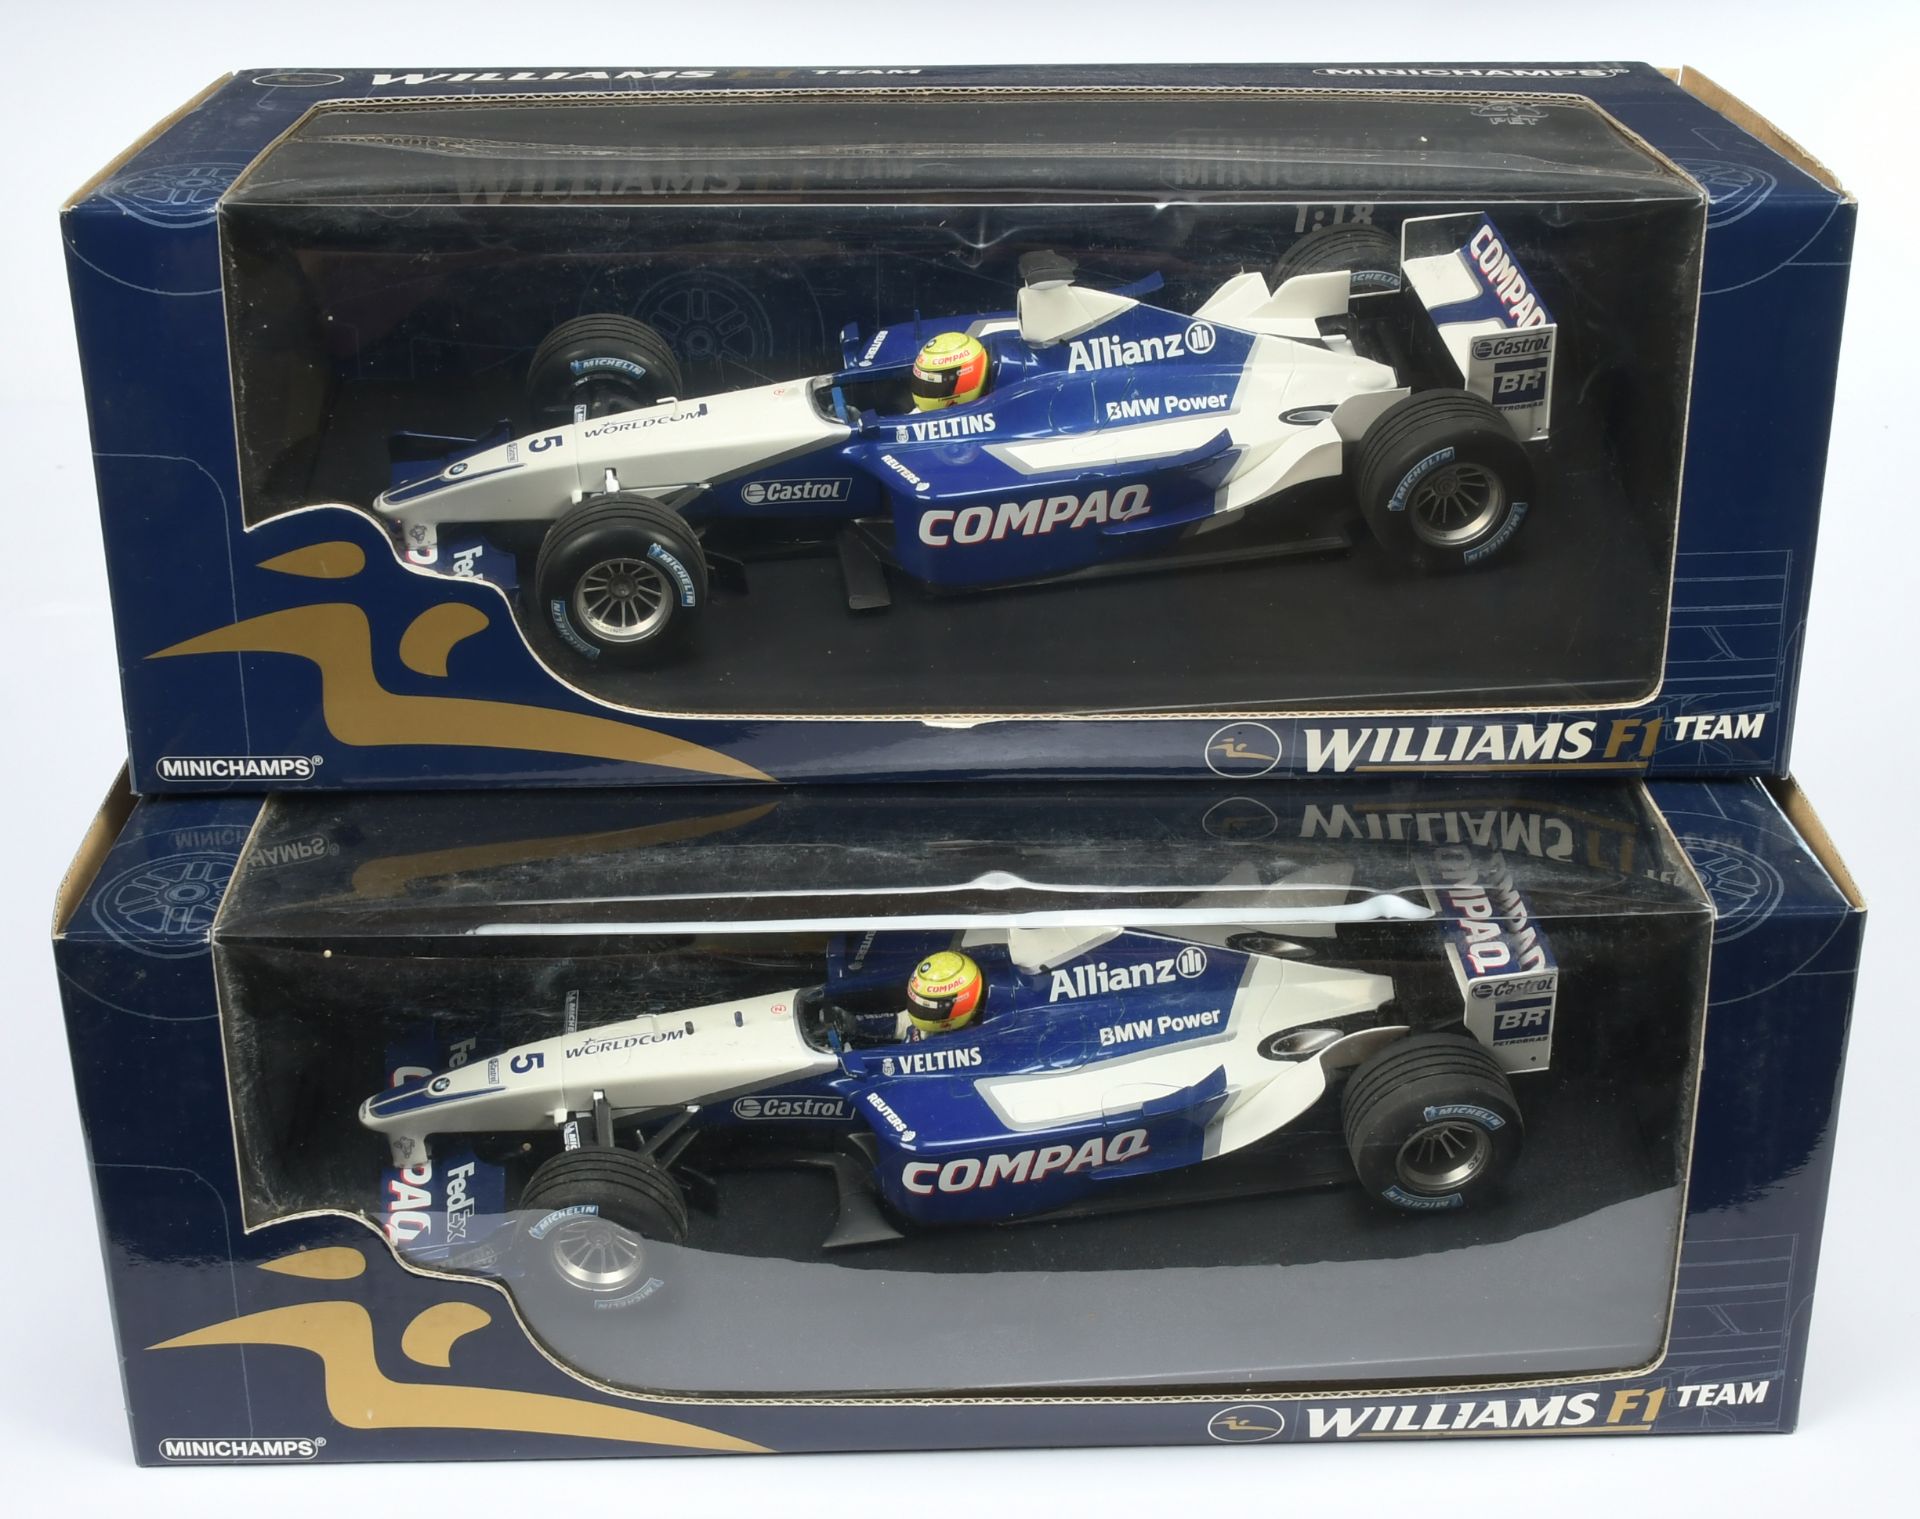 Minichamps 1/18 scale pair (1) 180020095 Williams BMW Laucnch Car 2002 - R. Schumacher (2) 180020...